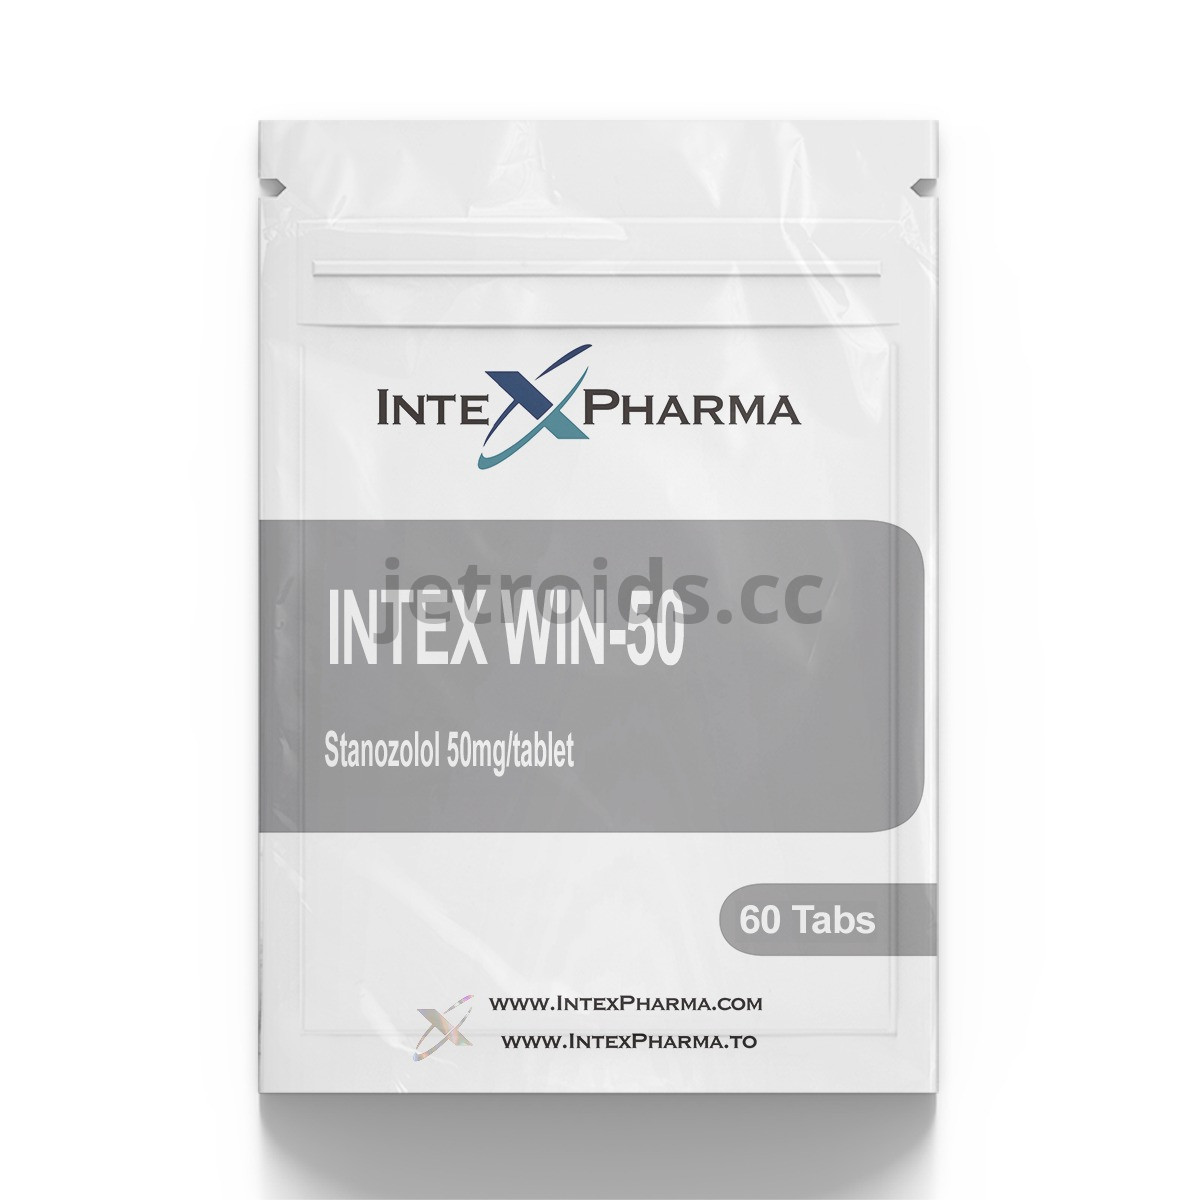 IntexPharma Intex WIN-50 Product Info